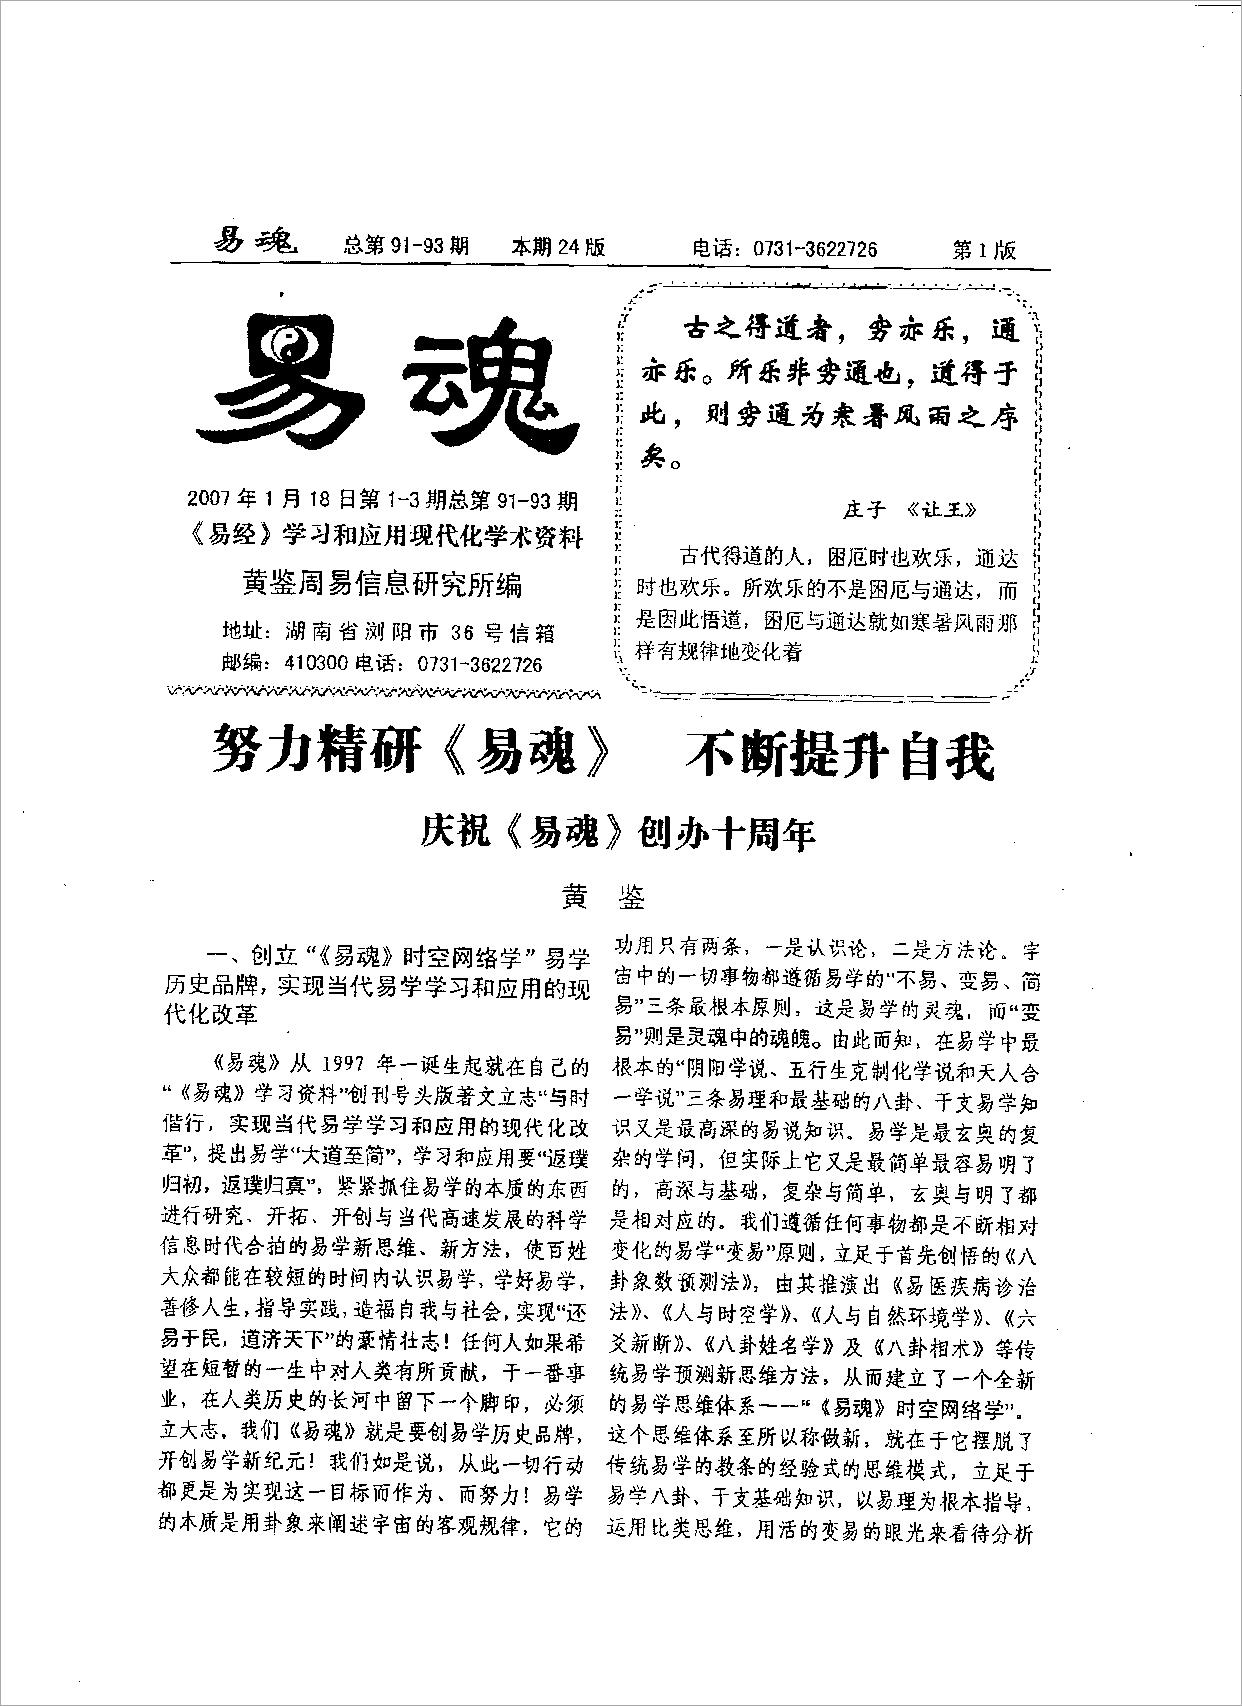 黄鉴-易魂小报91-100期80页.pdf